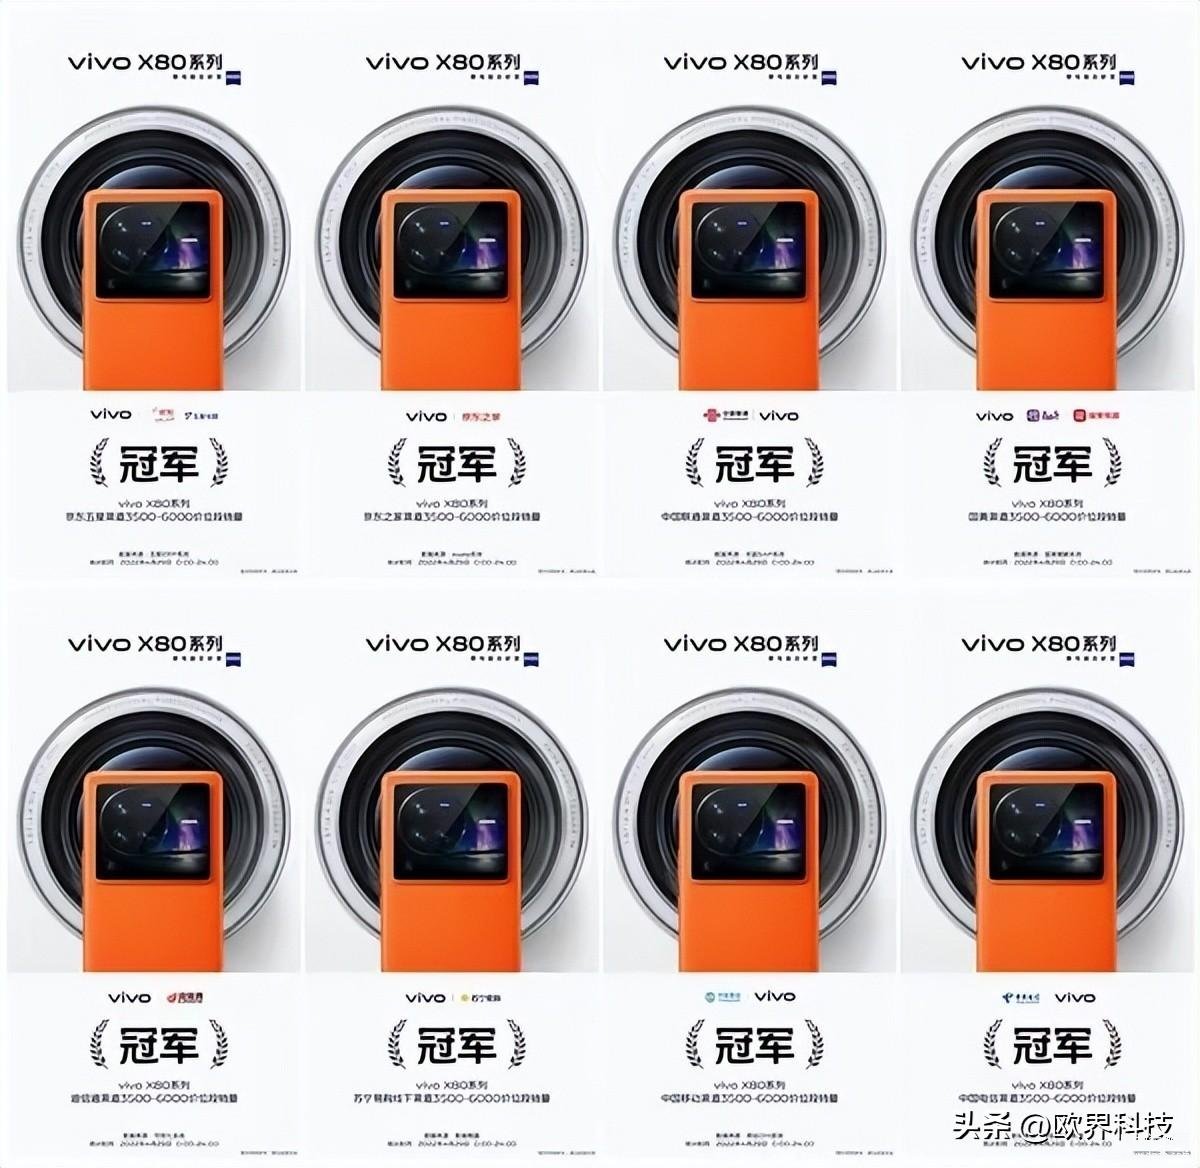 vivox80手机价格及参数,vivo X90系列屏幕参数曝光